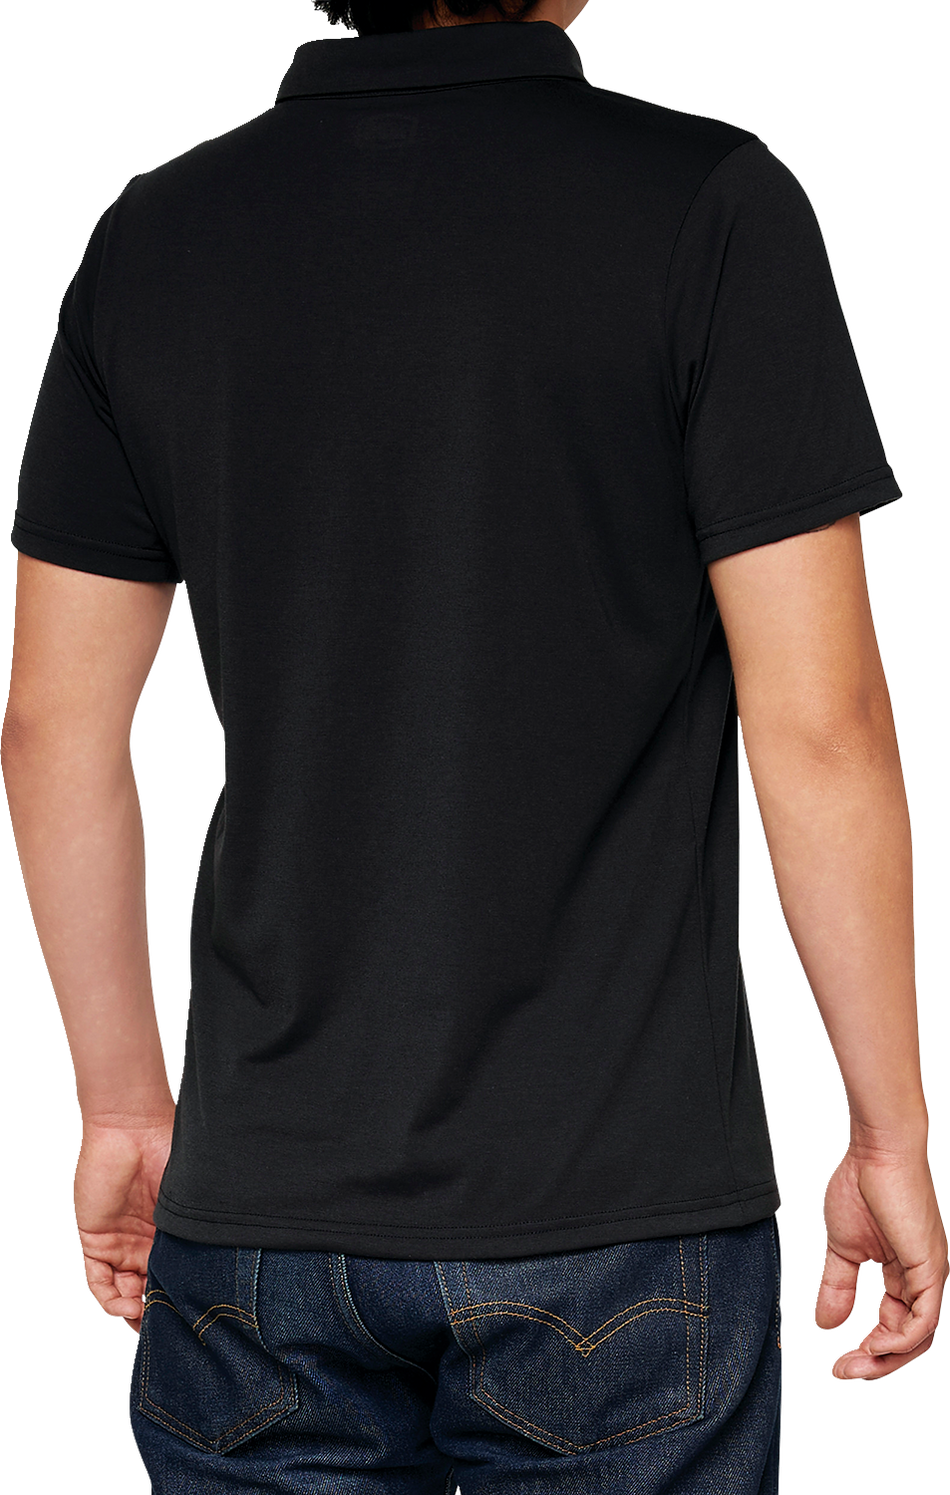 100% Corpo Polo Shirt - Black/Gray - XL 35019-057-13